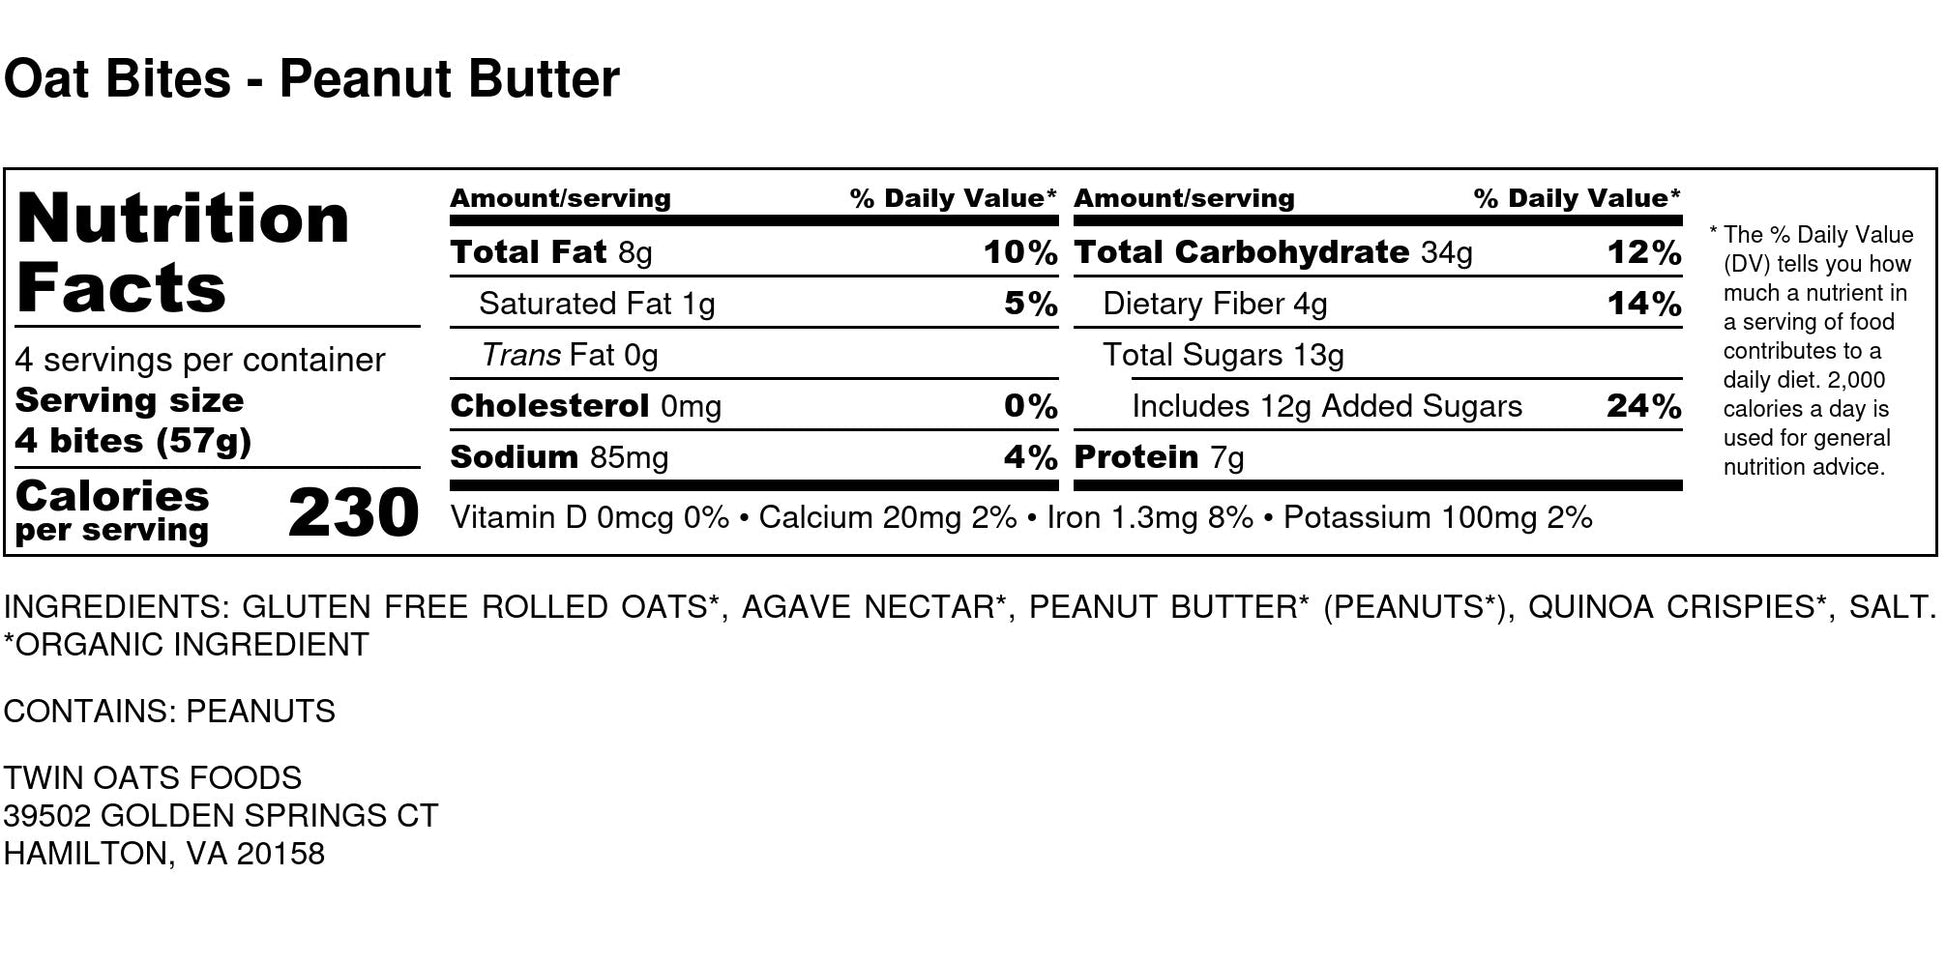 Twin Oats Foods Oat Bites - Peanut Butter Nutrition Label